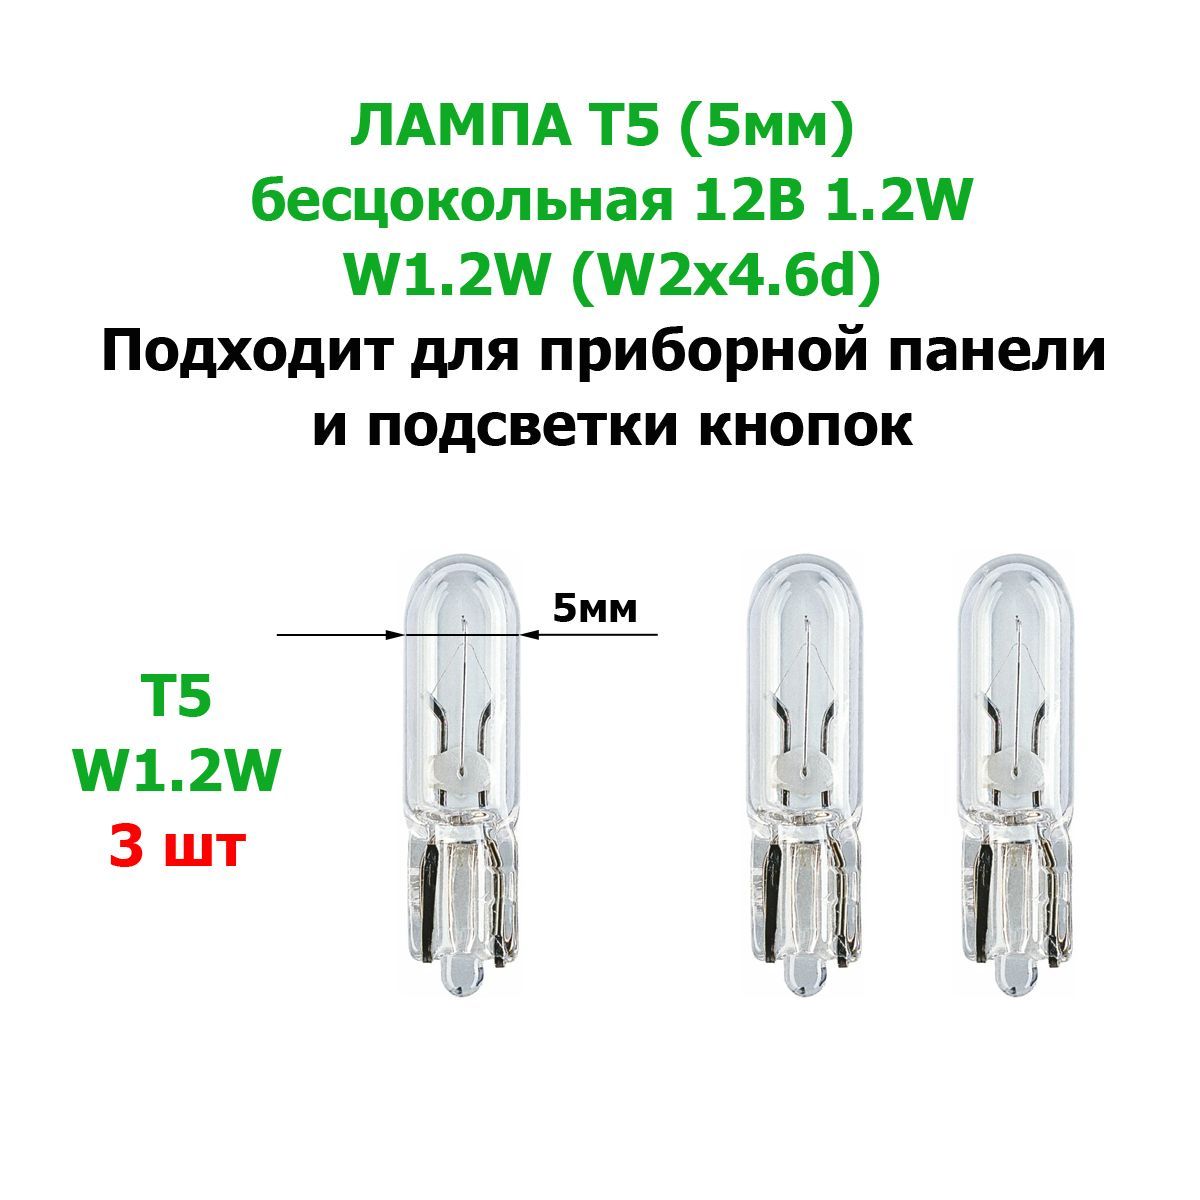 Lampada alogena T5 1,2W W2x4,6d